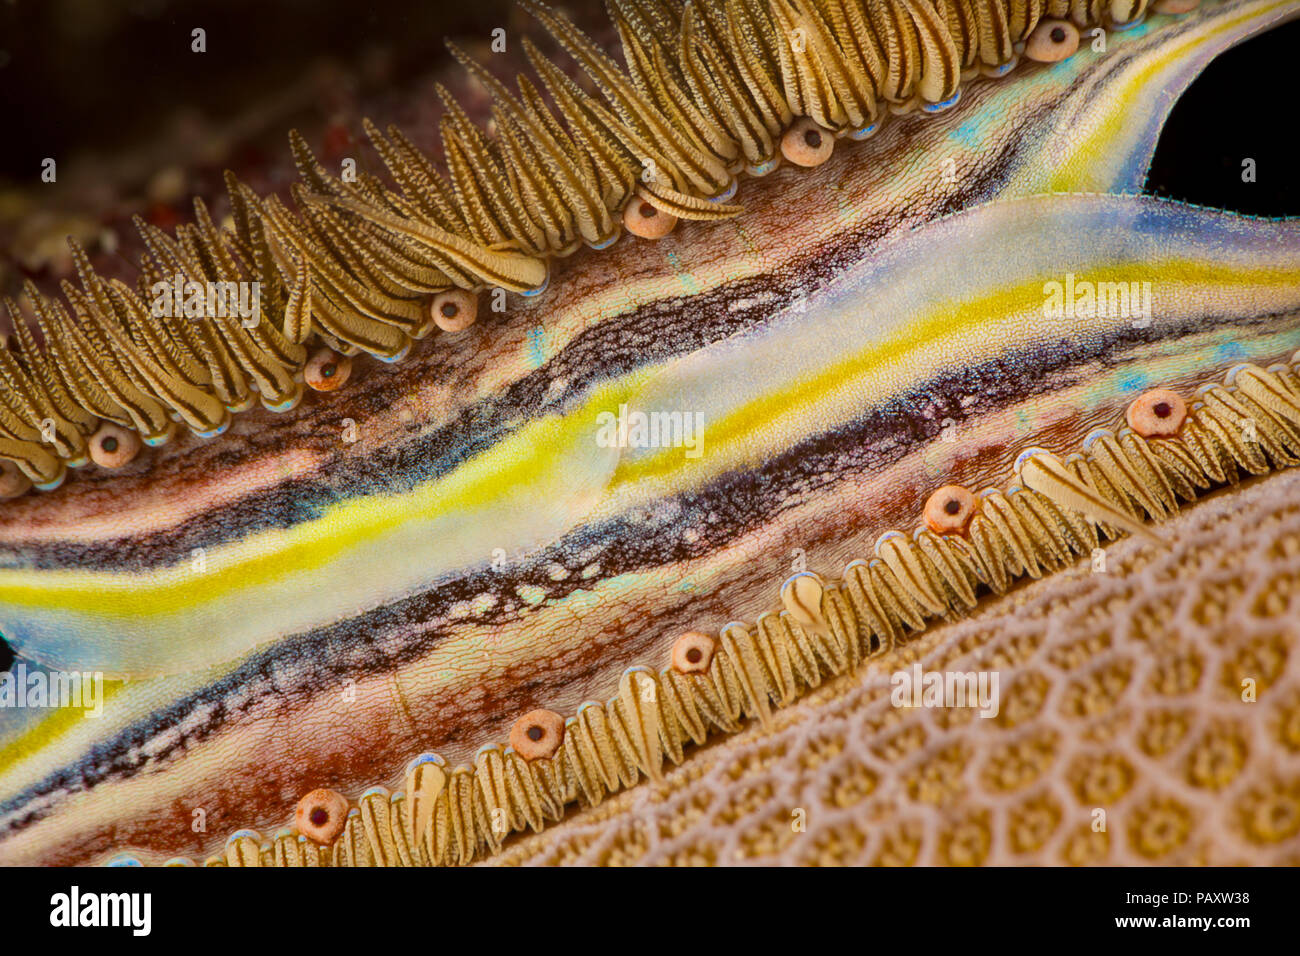 Die bunten Mantel und Reihen von winzigen Augen machen die Koralle - langweilig Jakobsmuscheln, Pedum spondyloideum, leicht auf dem Riff, Yap in Mikronesien anerkannt. Stockfoto